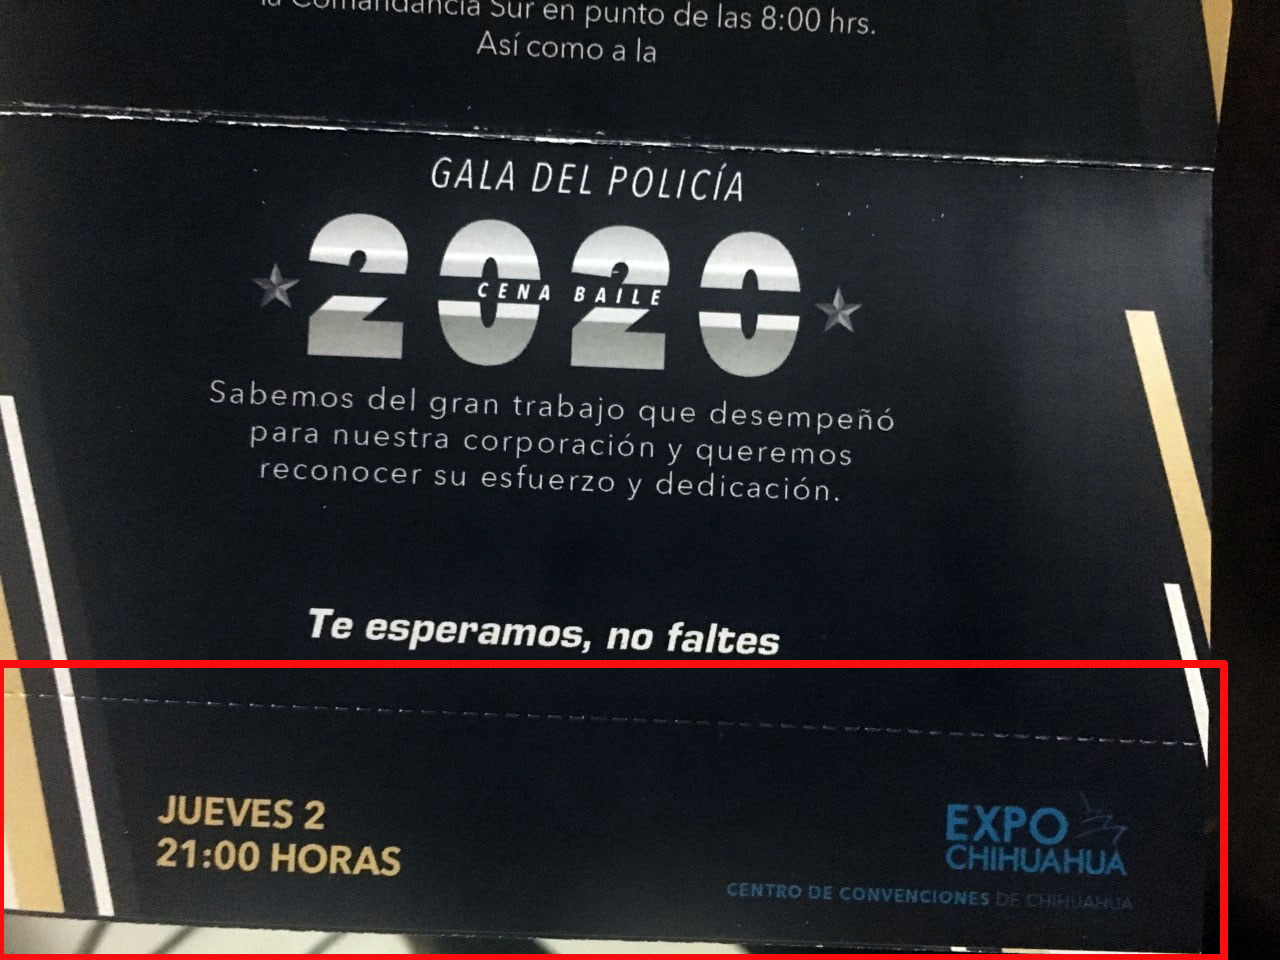 INVITAN A POLIS RETIRADOS A FESTEJO, PERO NO A LAS RIFAS